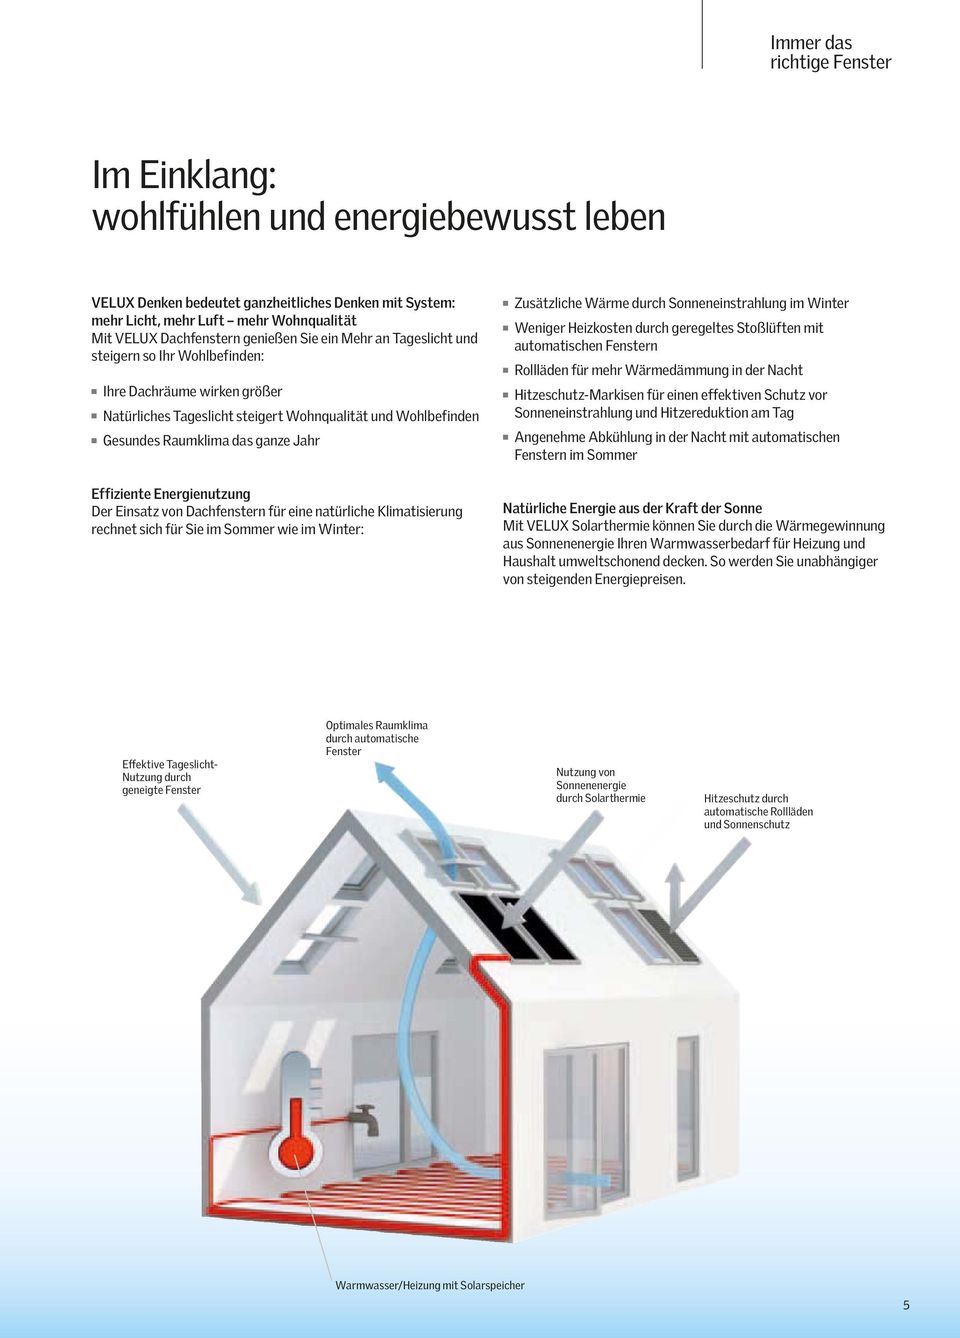 Effiziente Energienutzung Der Einsatz von Dachfenstern für eine natürliche Klimatisierung rechnet sich für Sie im Sommer wie im Winter: Zusätzliche Wärme durch Sonneneinstrahlung im Winter Weniger